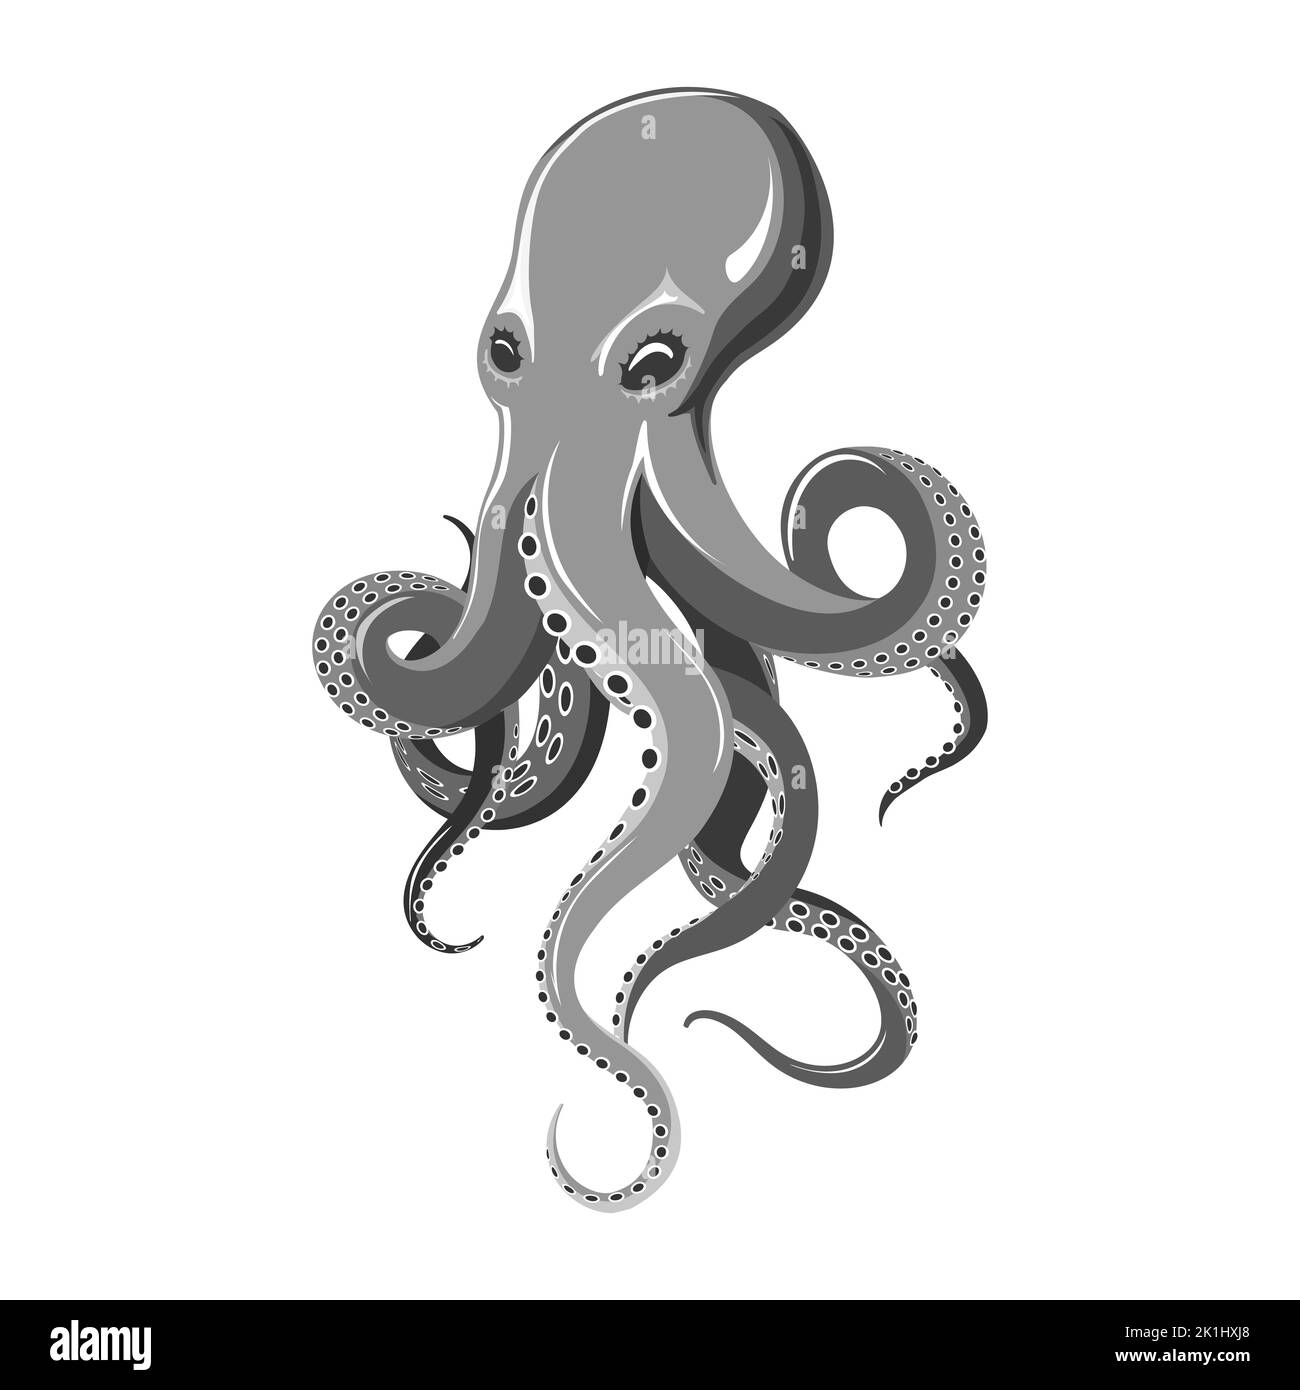 Release The Kraken T-Shirt, Giant Squid Octopus Titans Tee